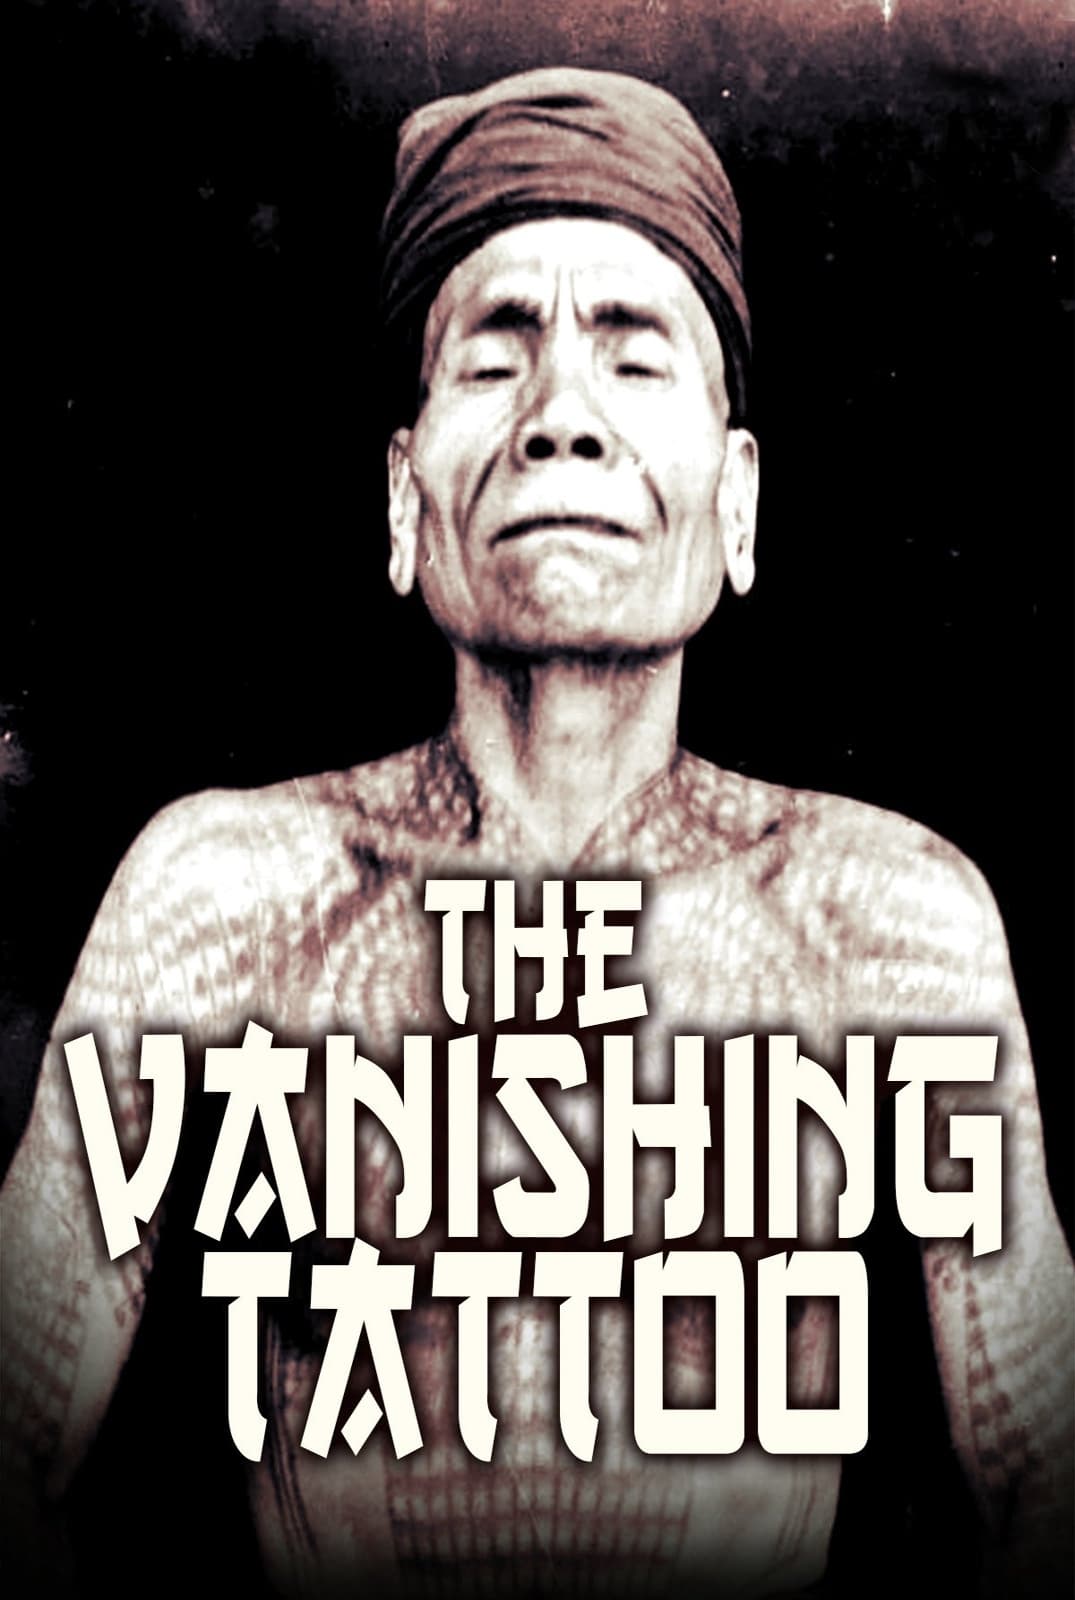 The Vanishing Tattoo